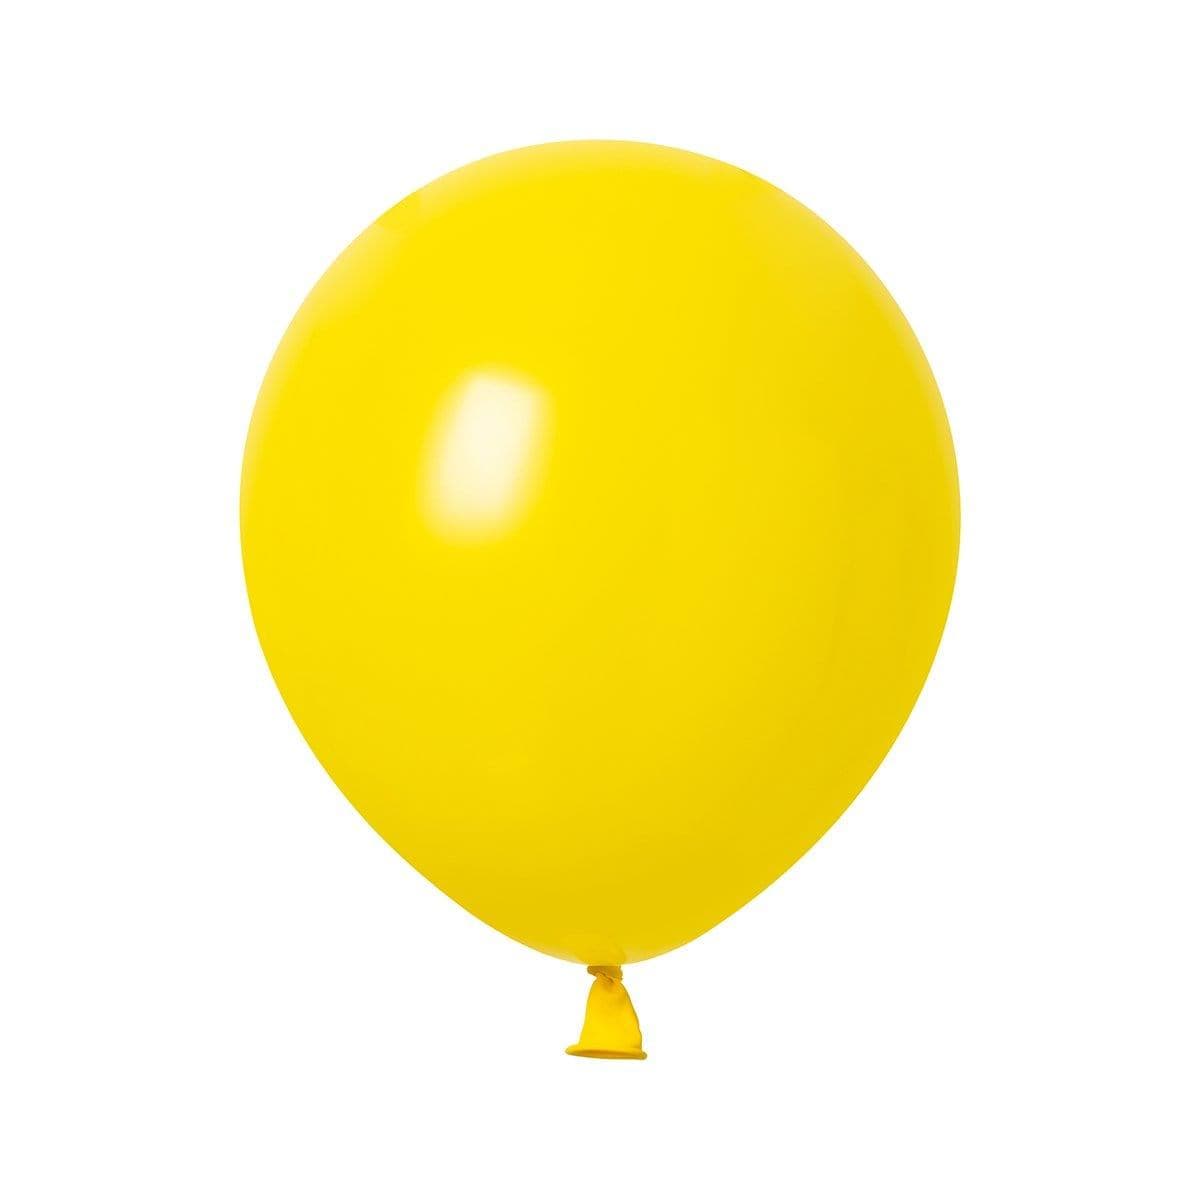 Ballon or latex